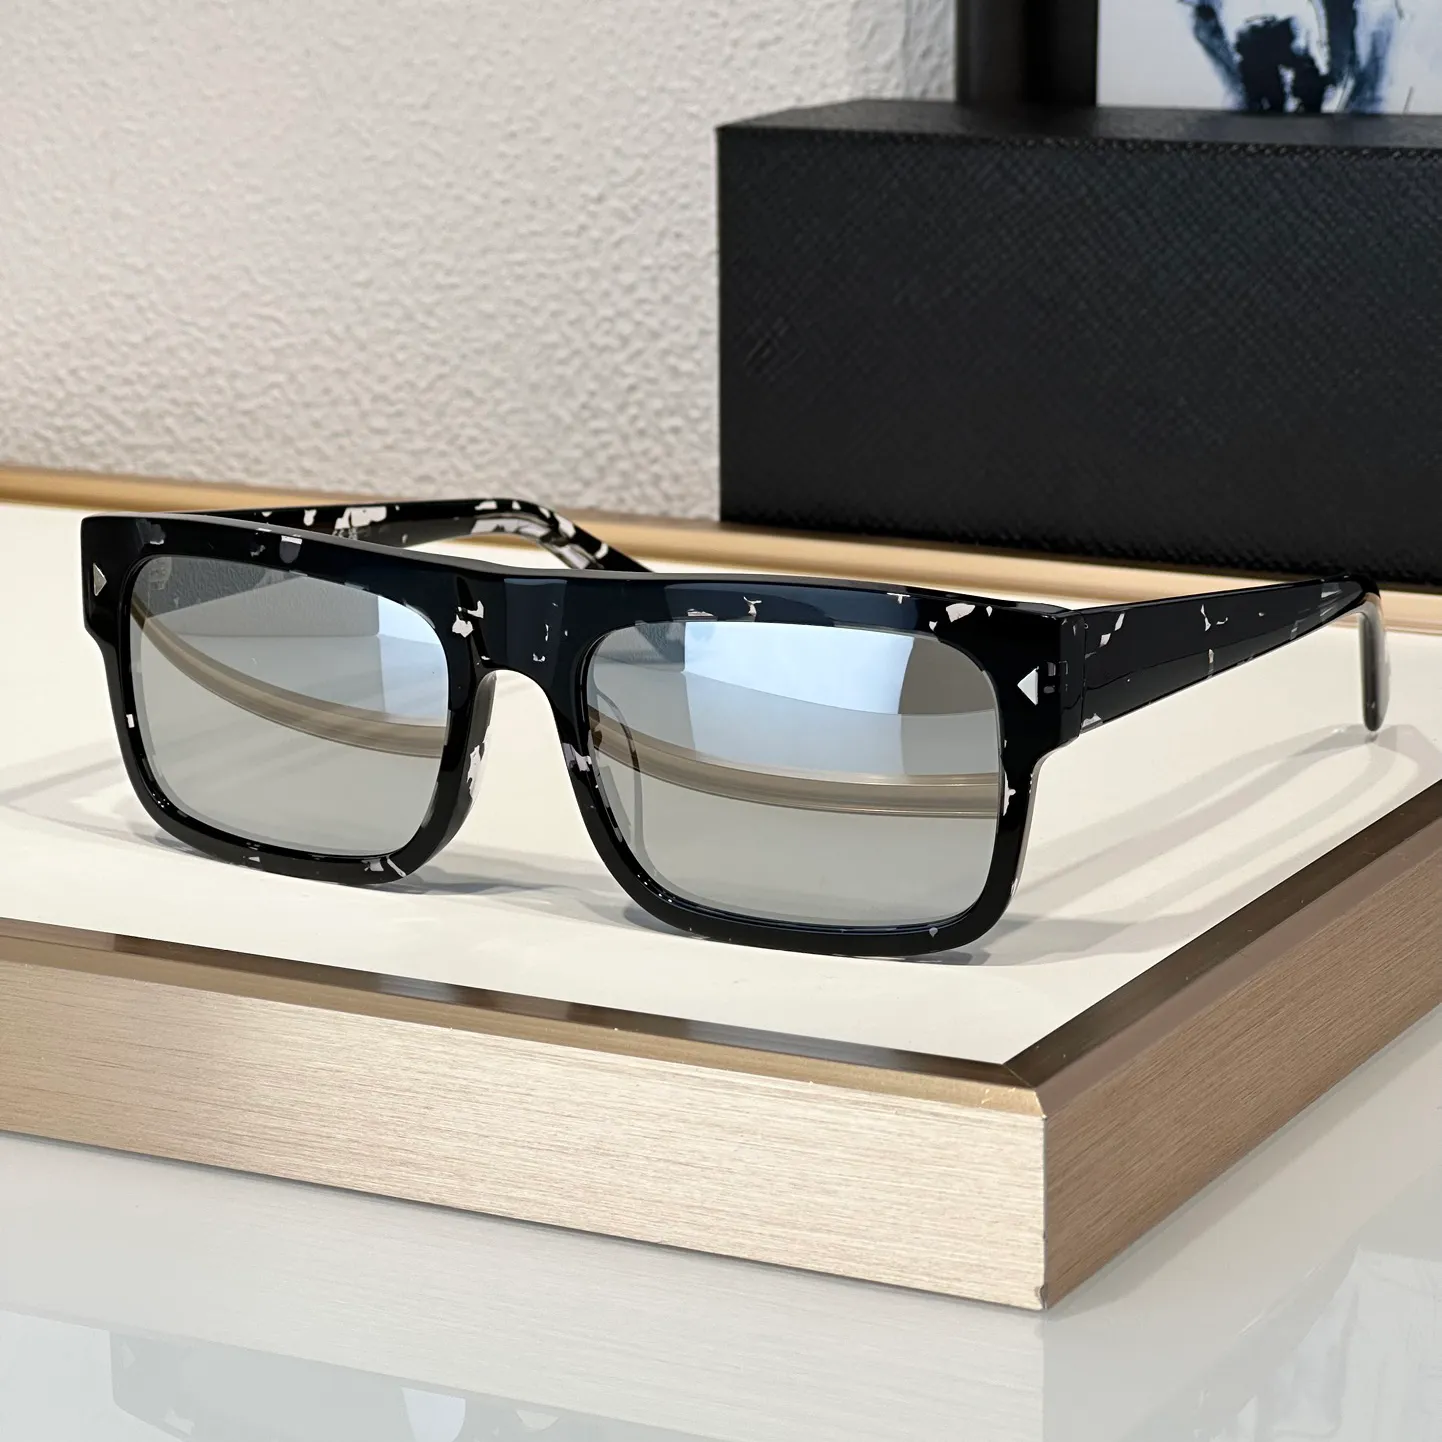 Sonnenbrille für Männer Frauen beliebte A10 Retro Eyewear Designer Modebrandstil Schutzbrille Anti-Ultraviolett UV400 CR39 Board Square Vollrahmen Random Box